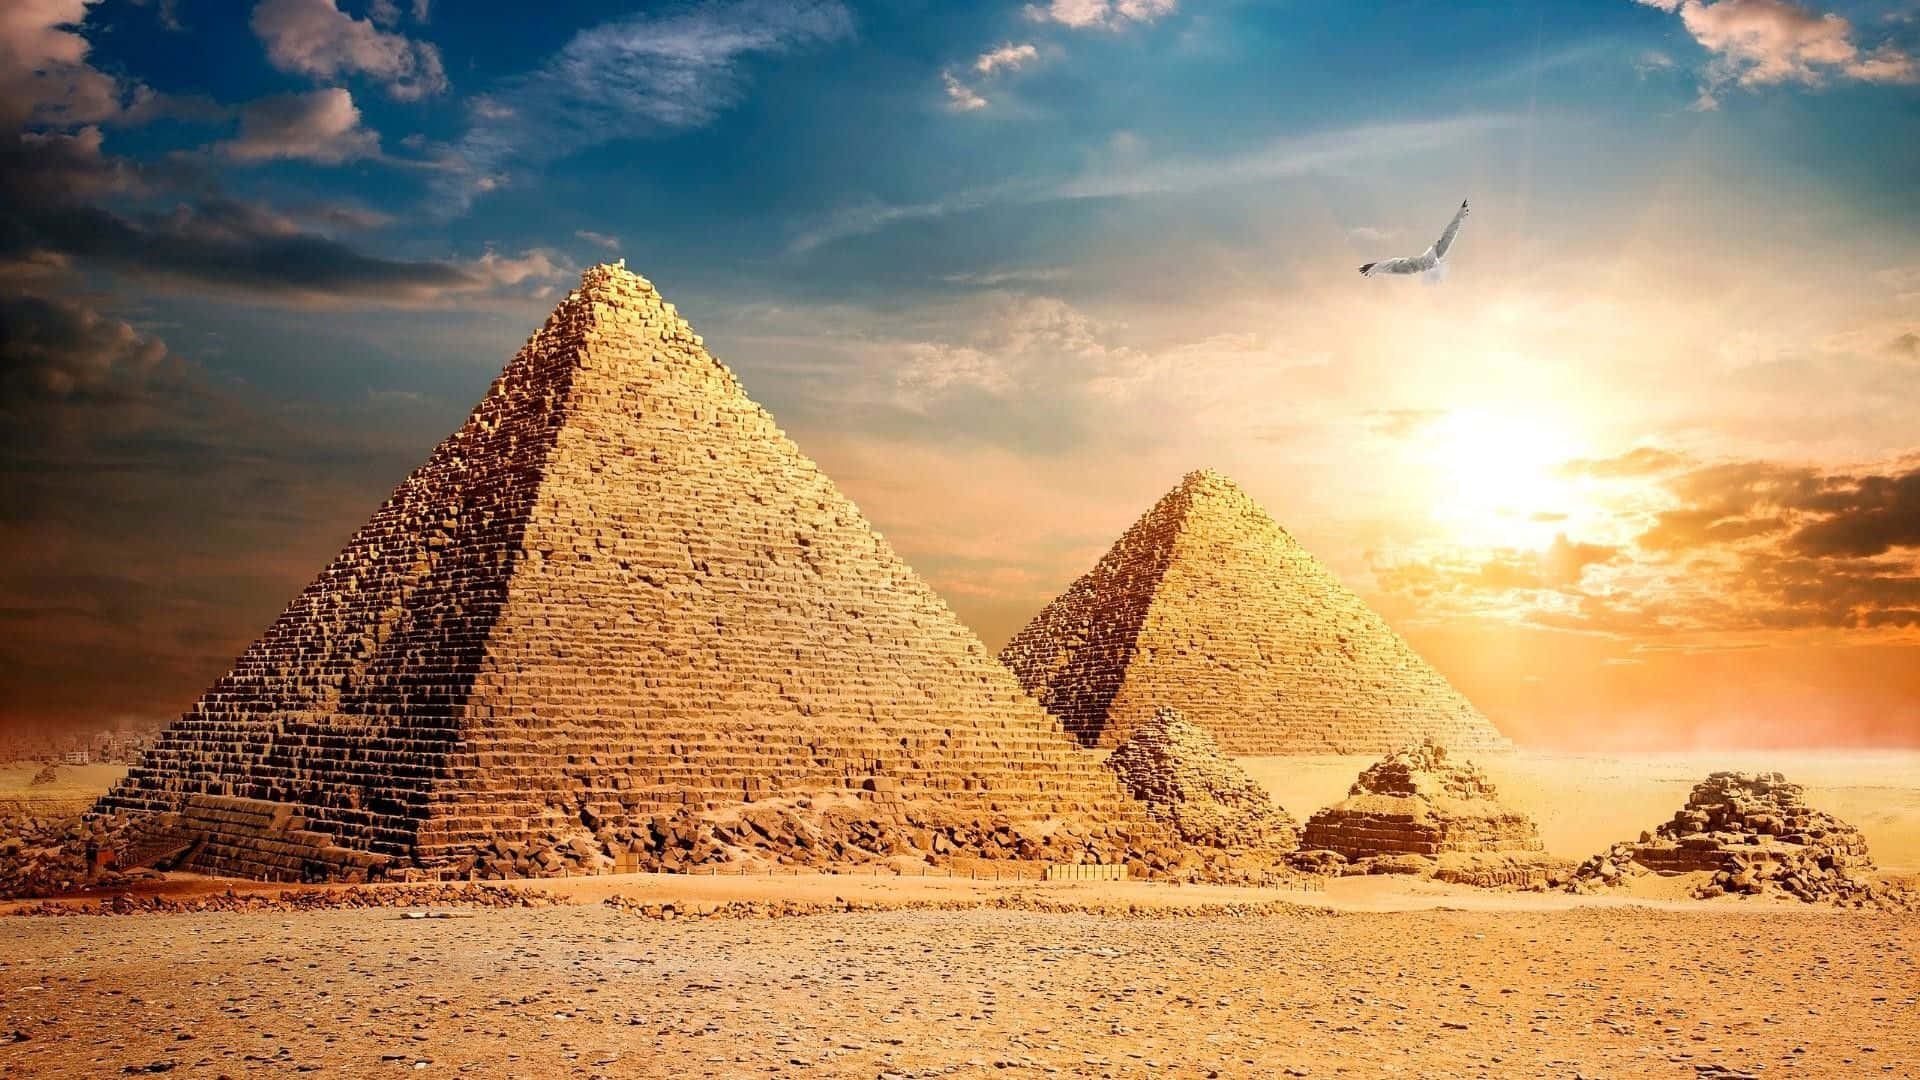 Giza Pyramids Sunset View Wallpaper